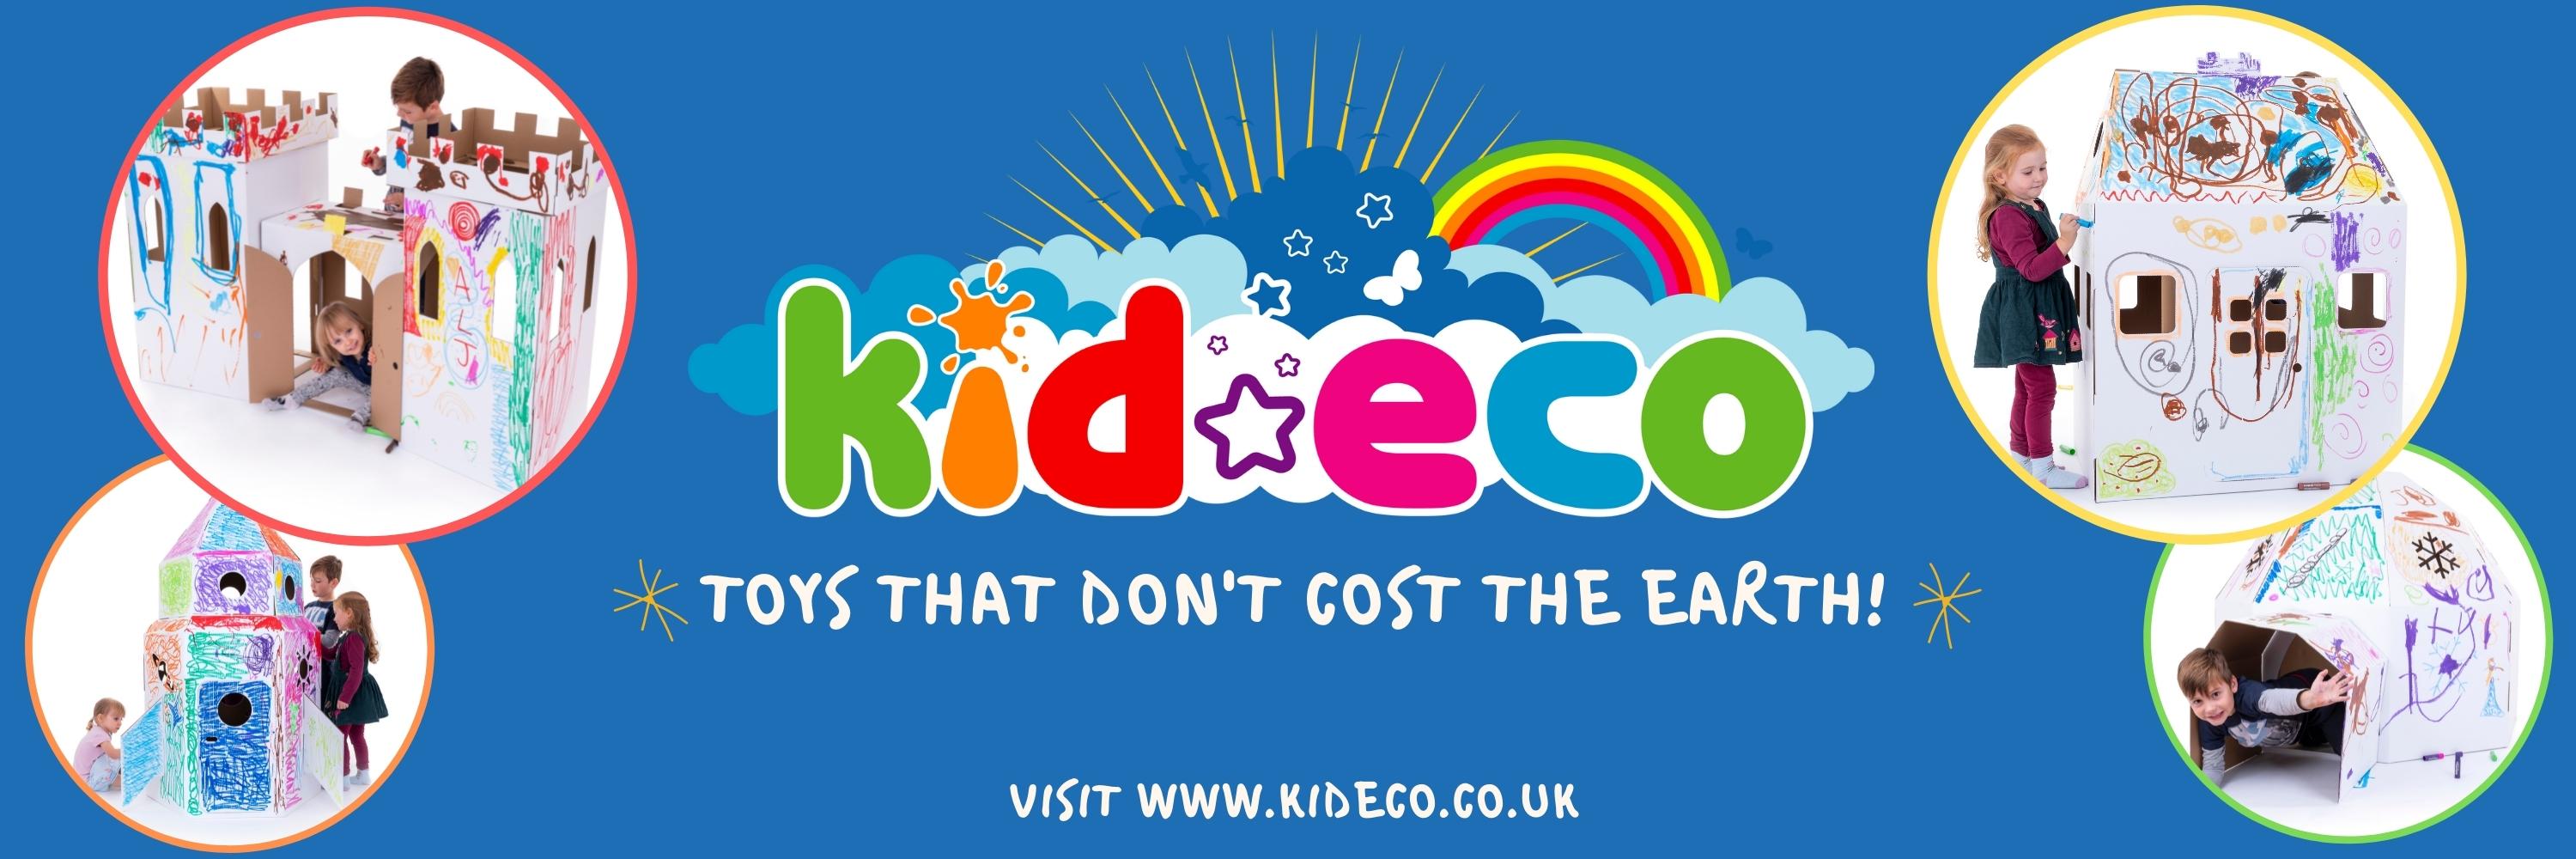 Kid-Eco's main image